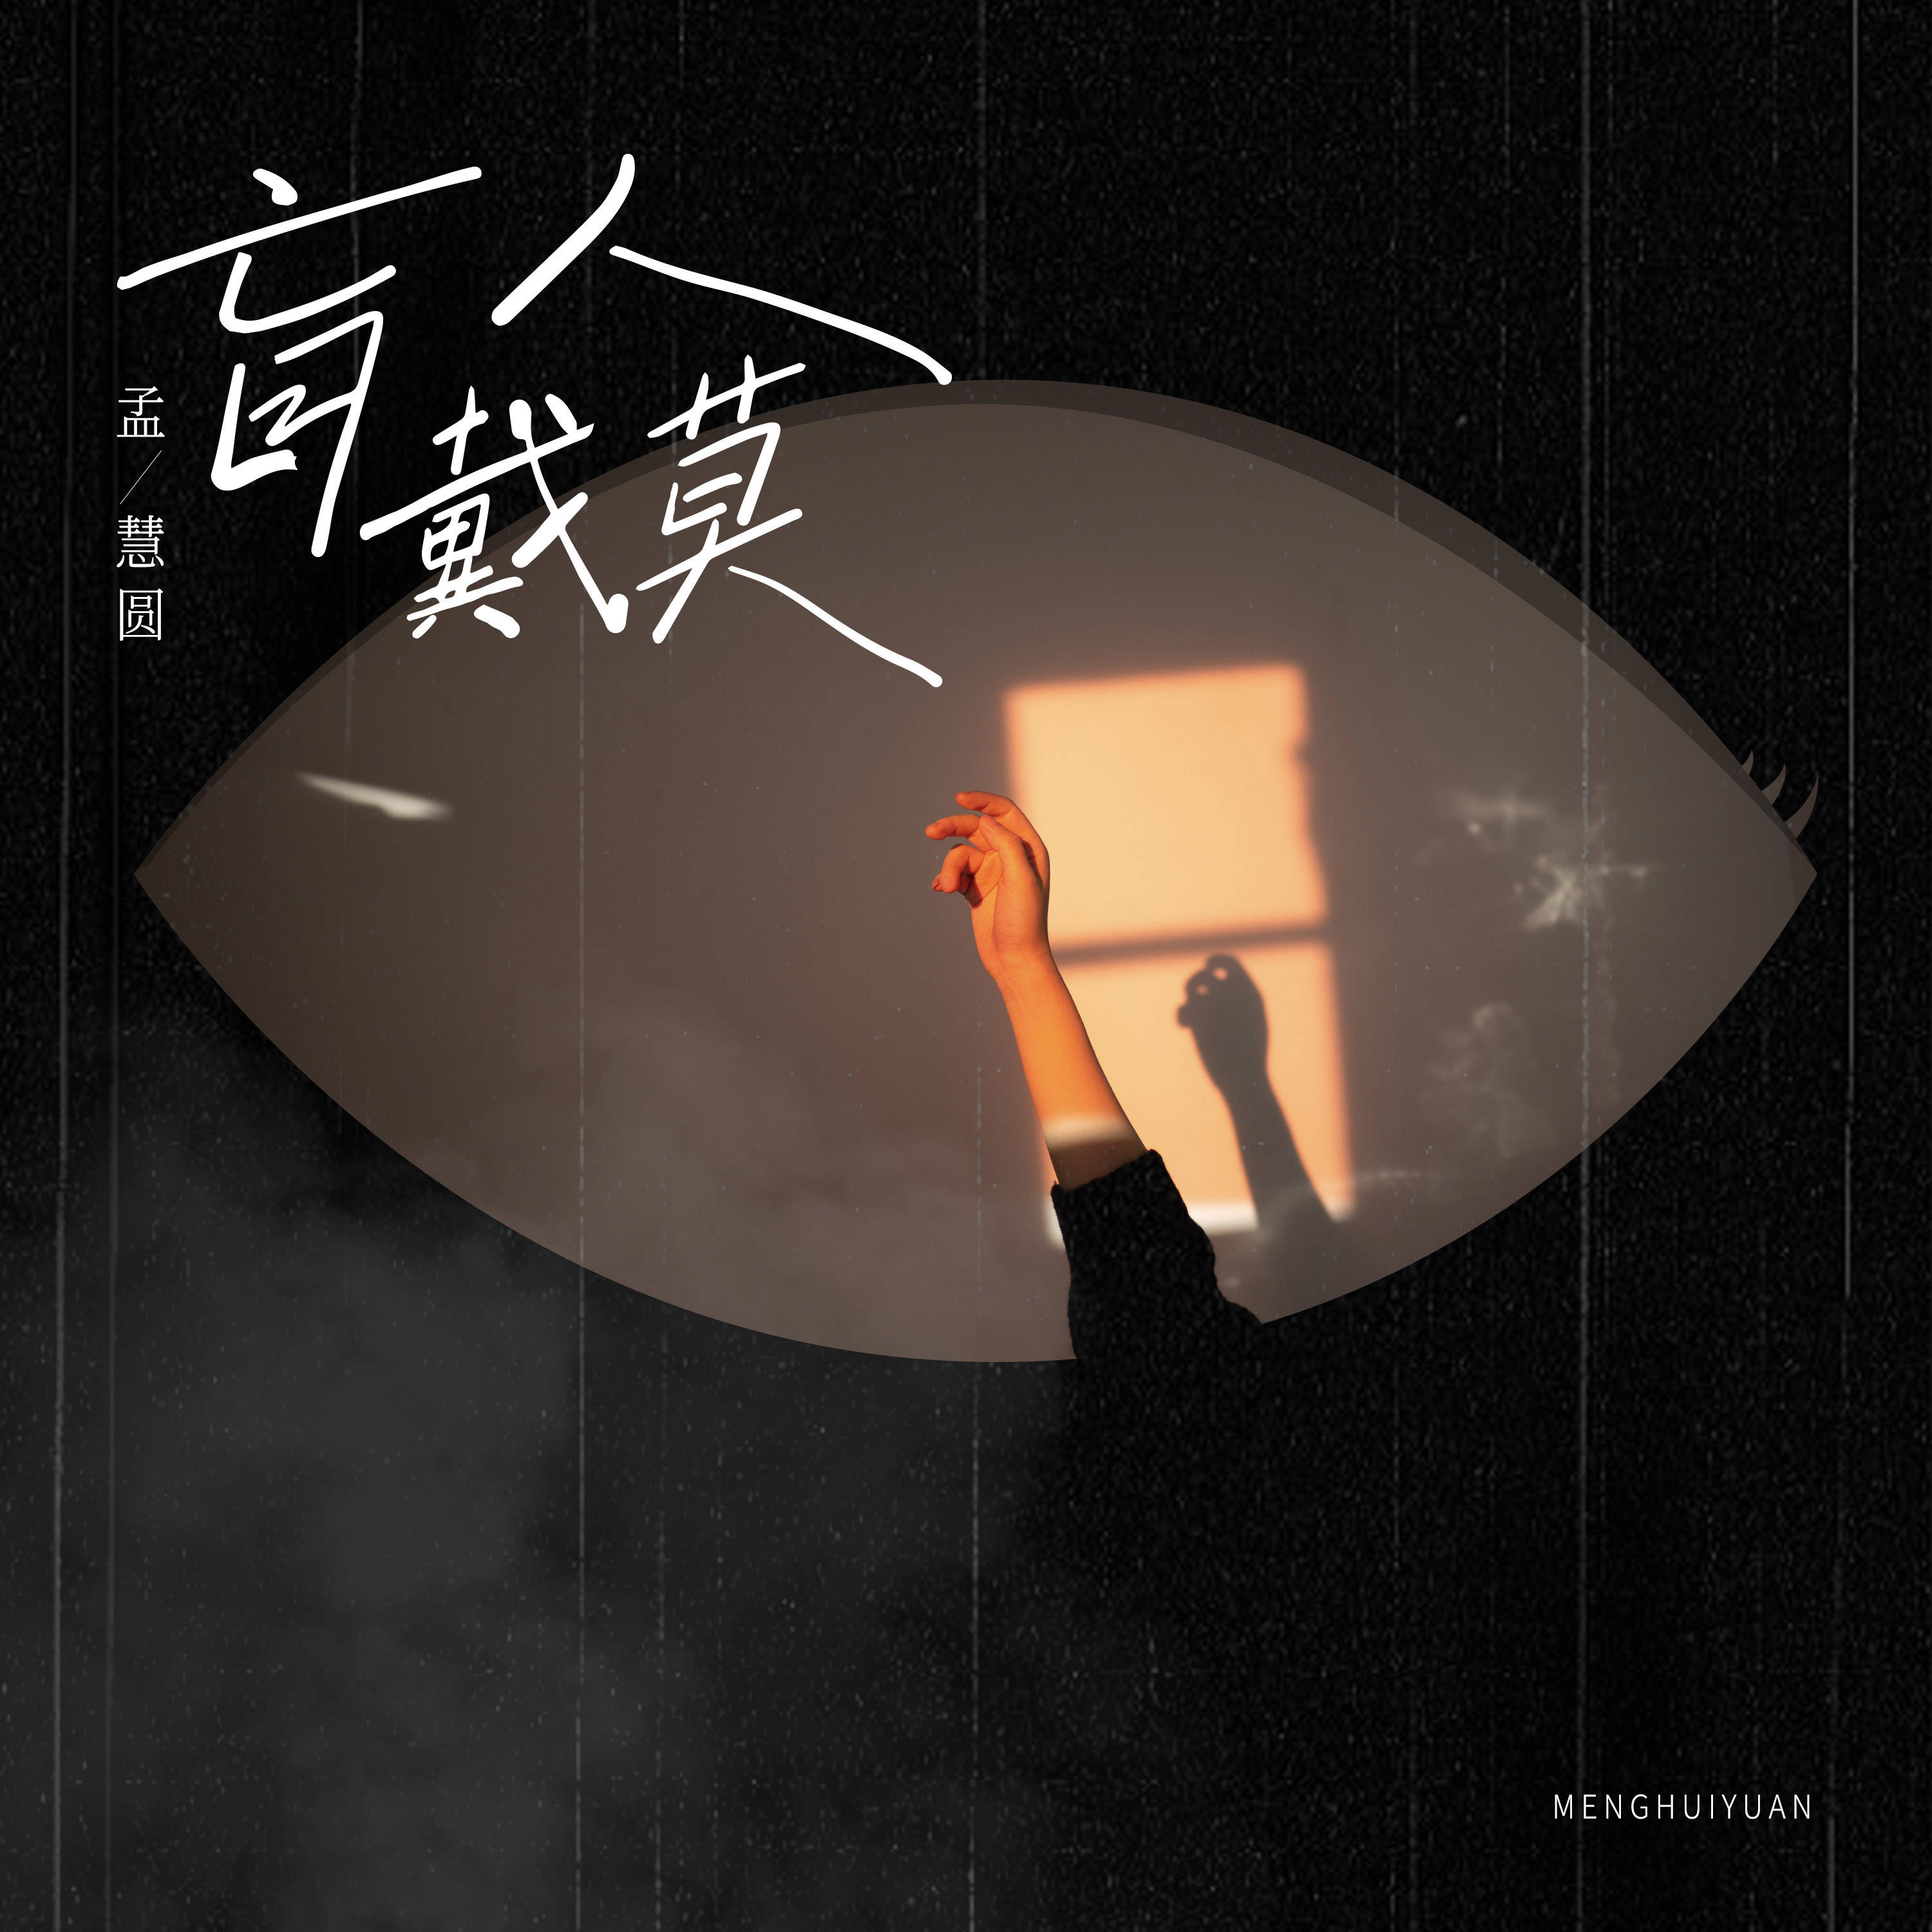 孟慧圆全新创作专辑《盲人戴莫》上线 宝藏歌手回归真我